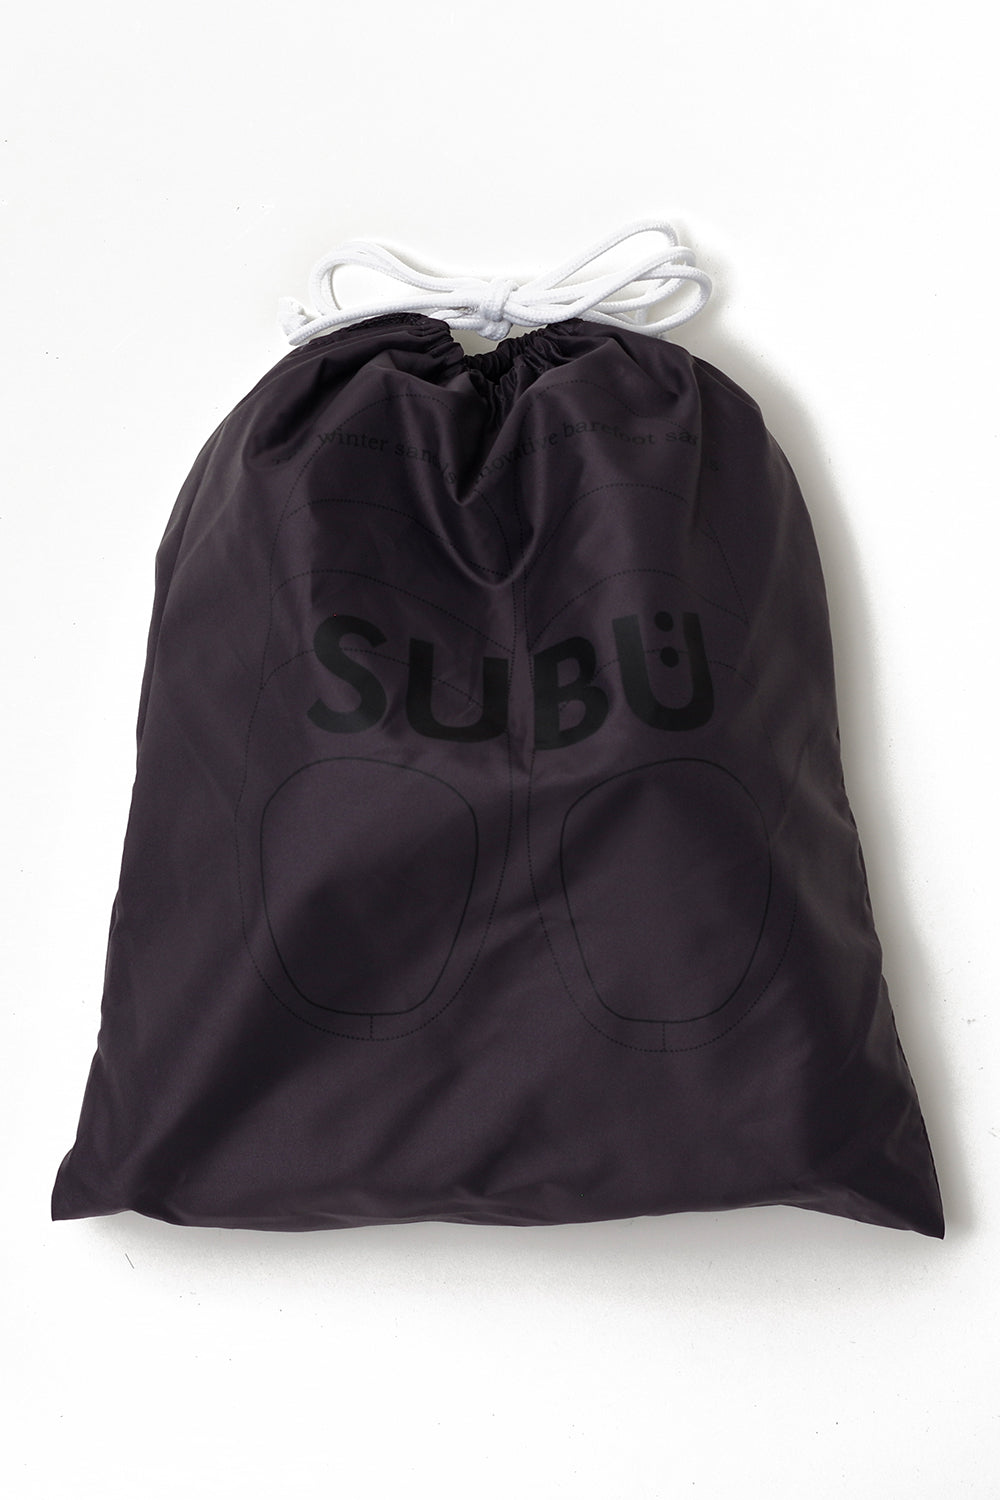 SUBU Indoor Outdoor Slippers (Steel Grey) | Number Six